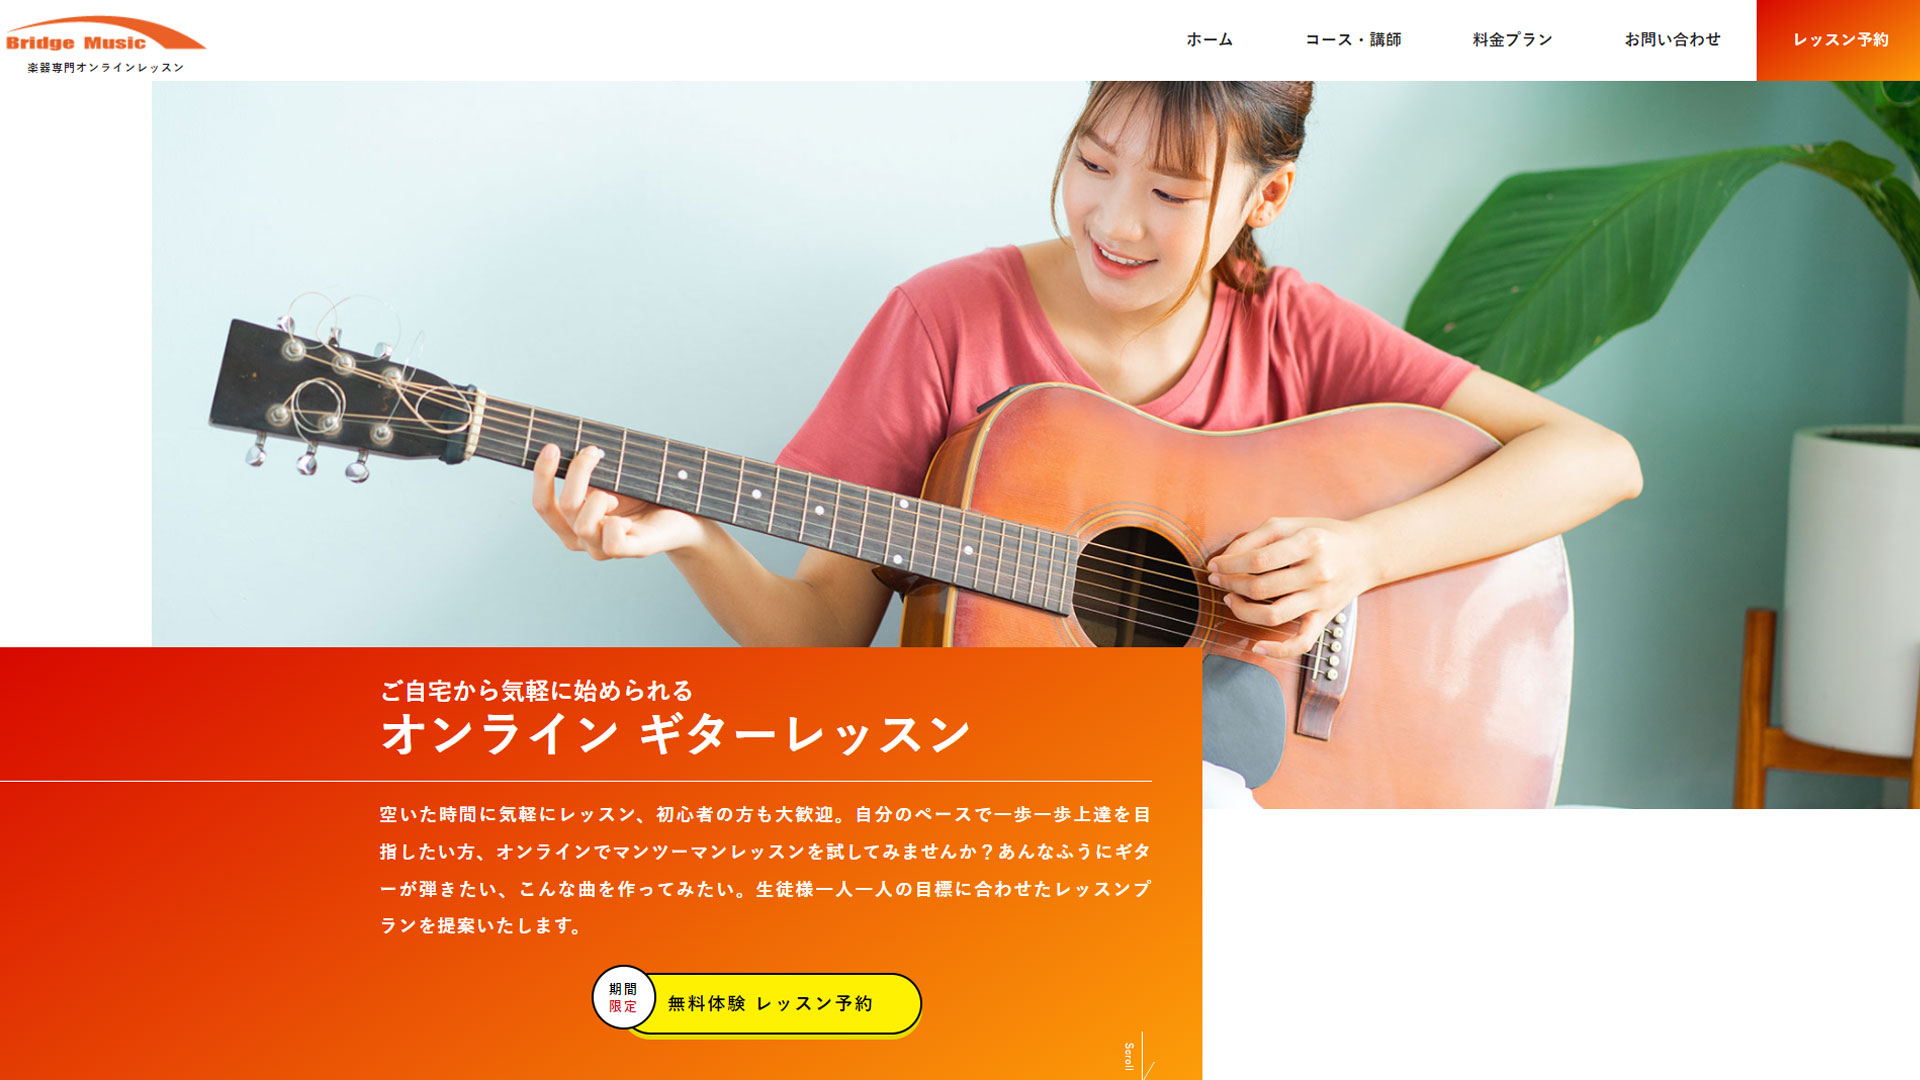 Bridge Music【オンラインギターレッスン】WEBサイト新規作成